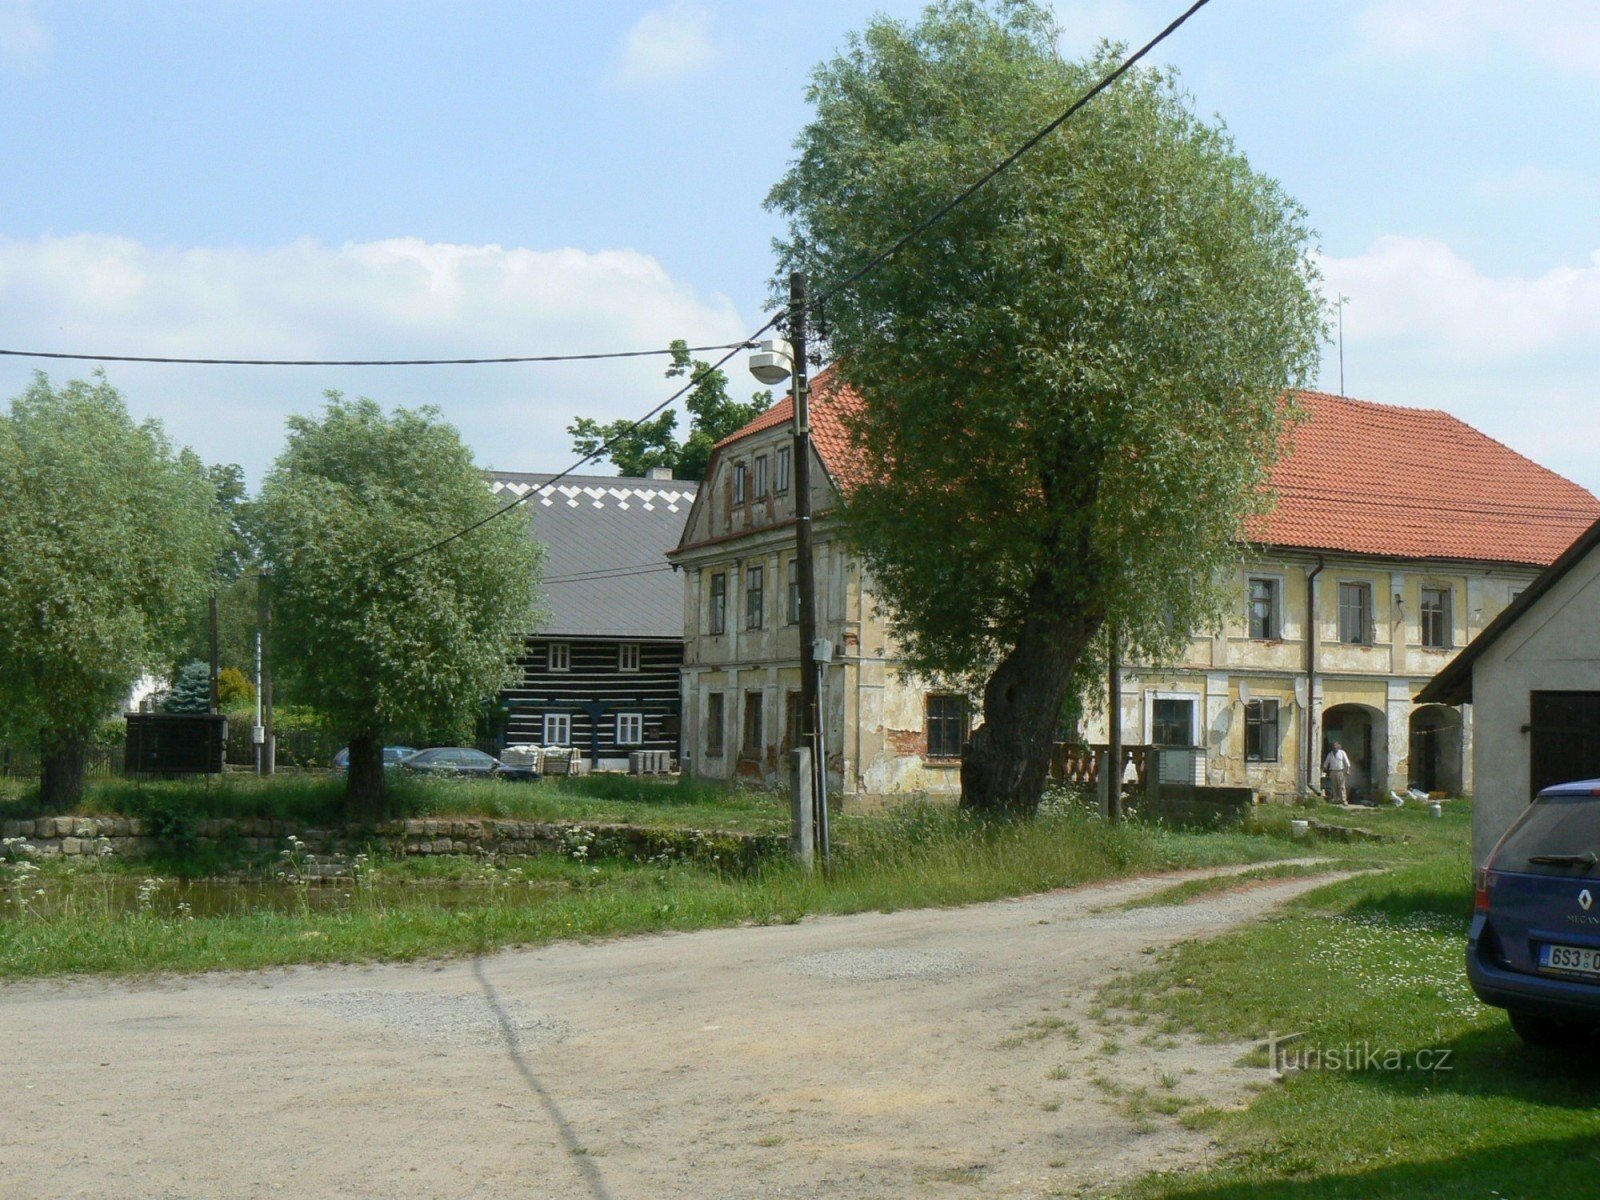 Häuser im Dorf